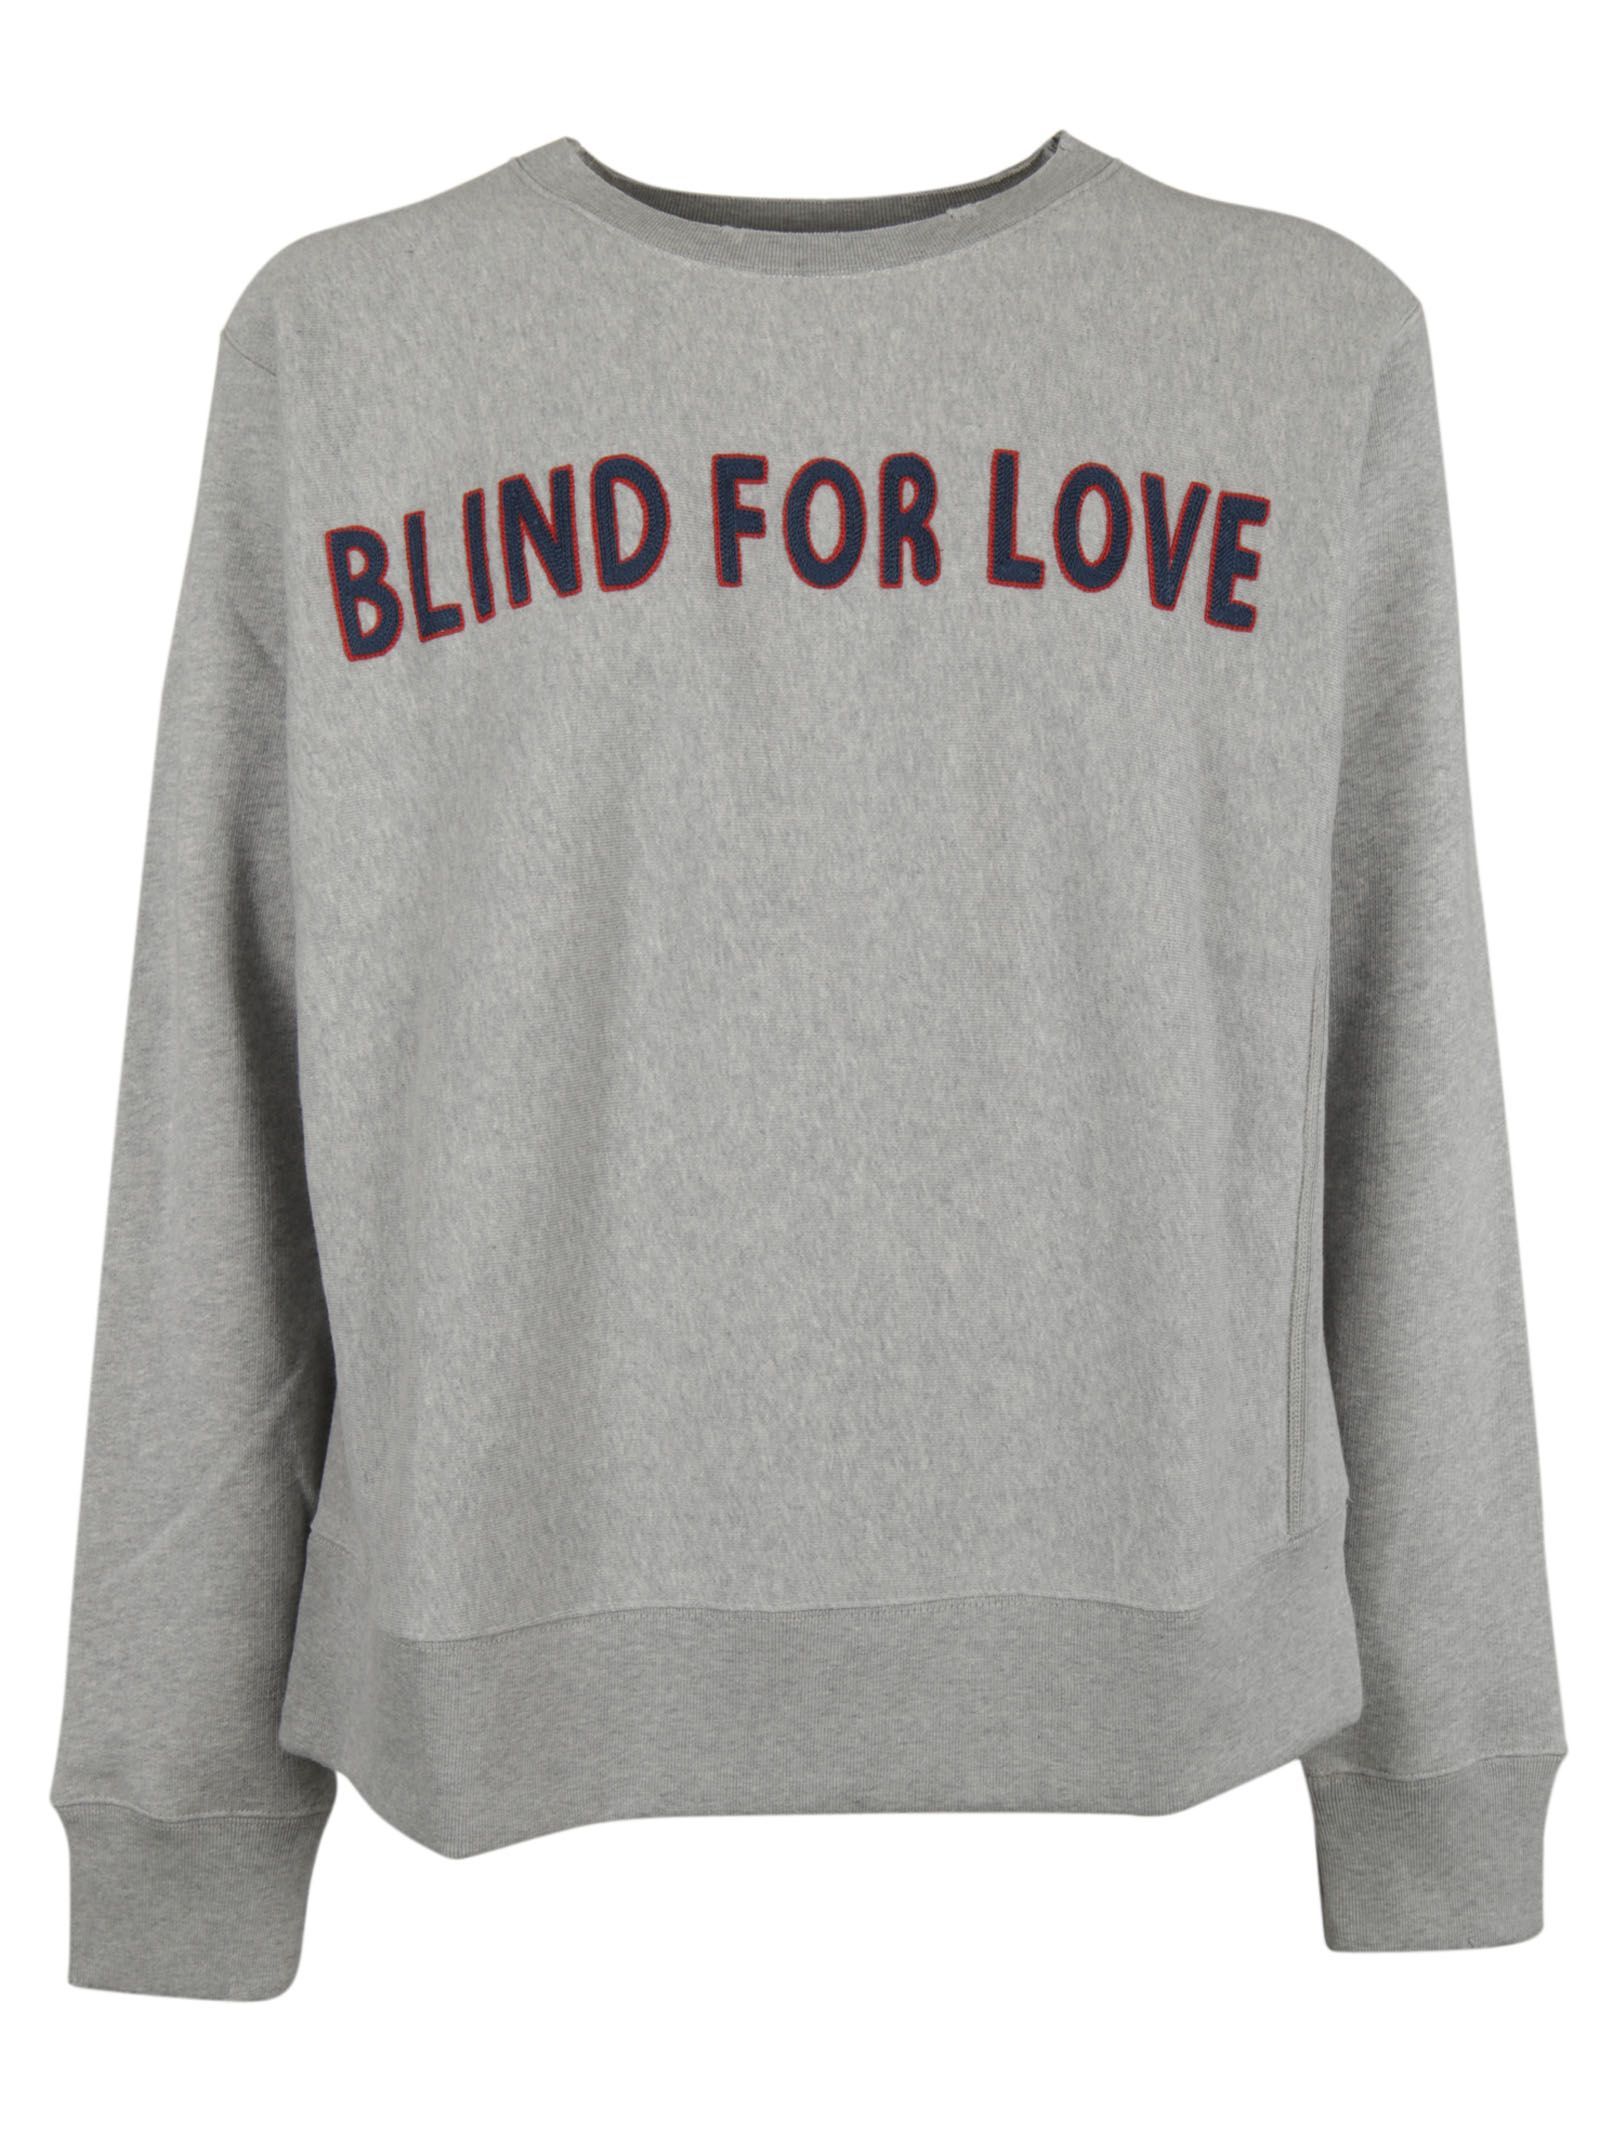 Gucci Men's Grigio Chiaro Blind For Love Sweatshirt None